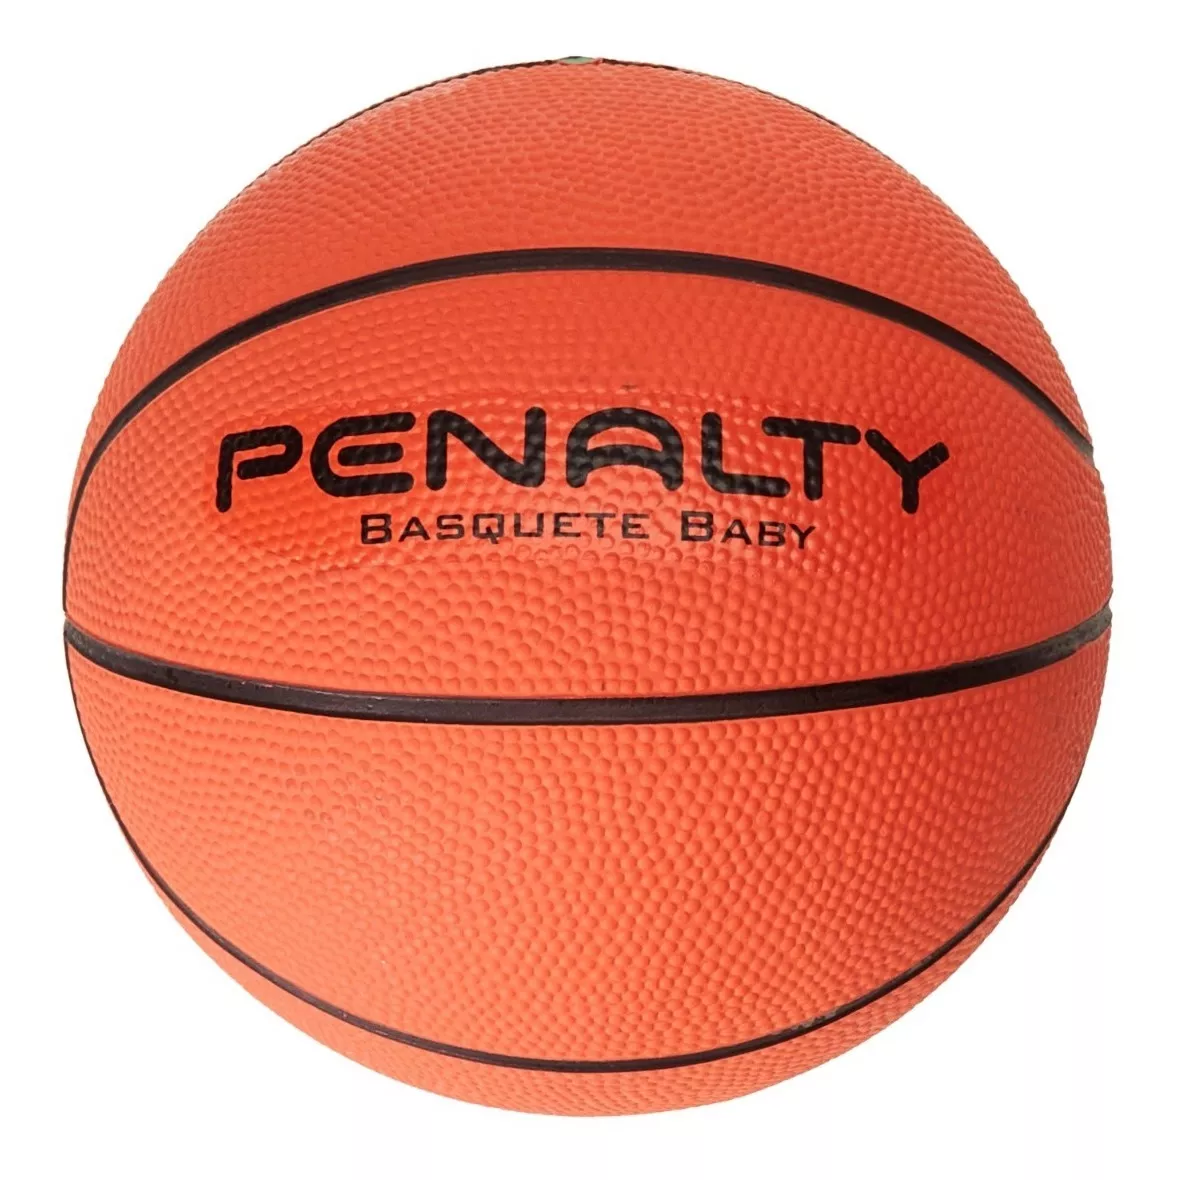 Segunda imagem para pesquisa de bola de basquete penalty